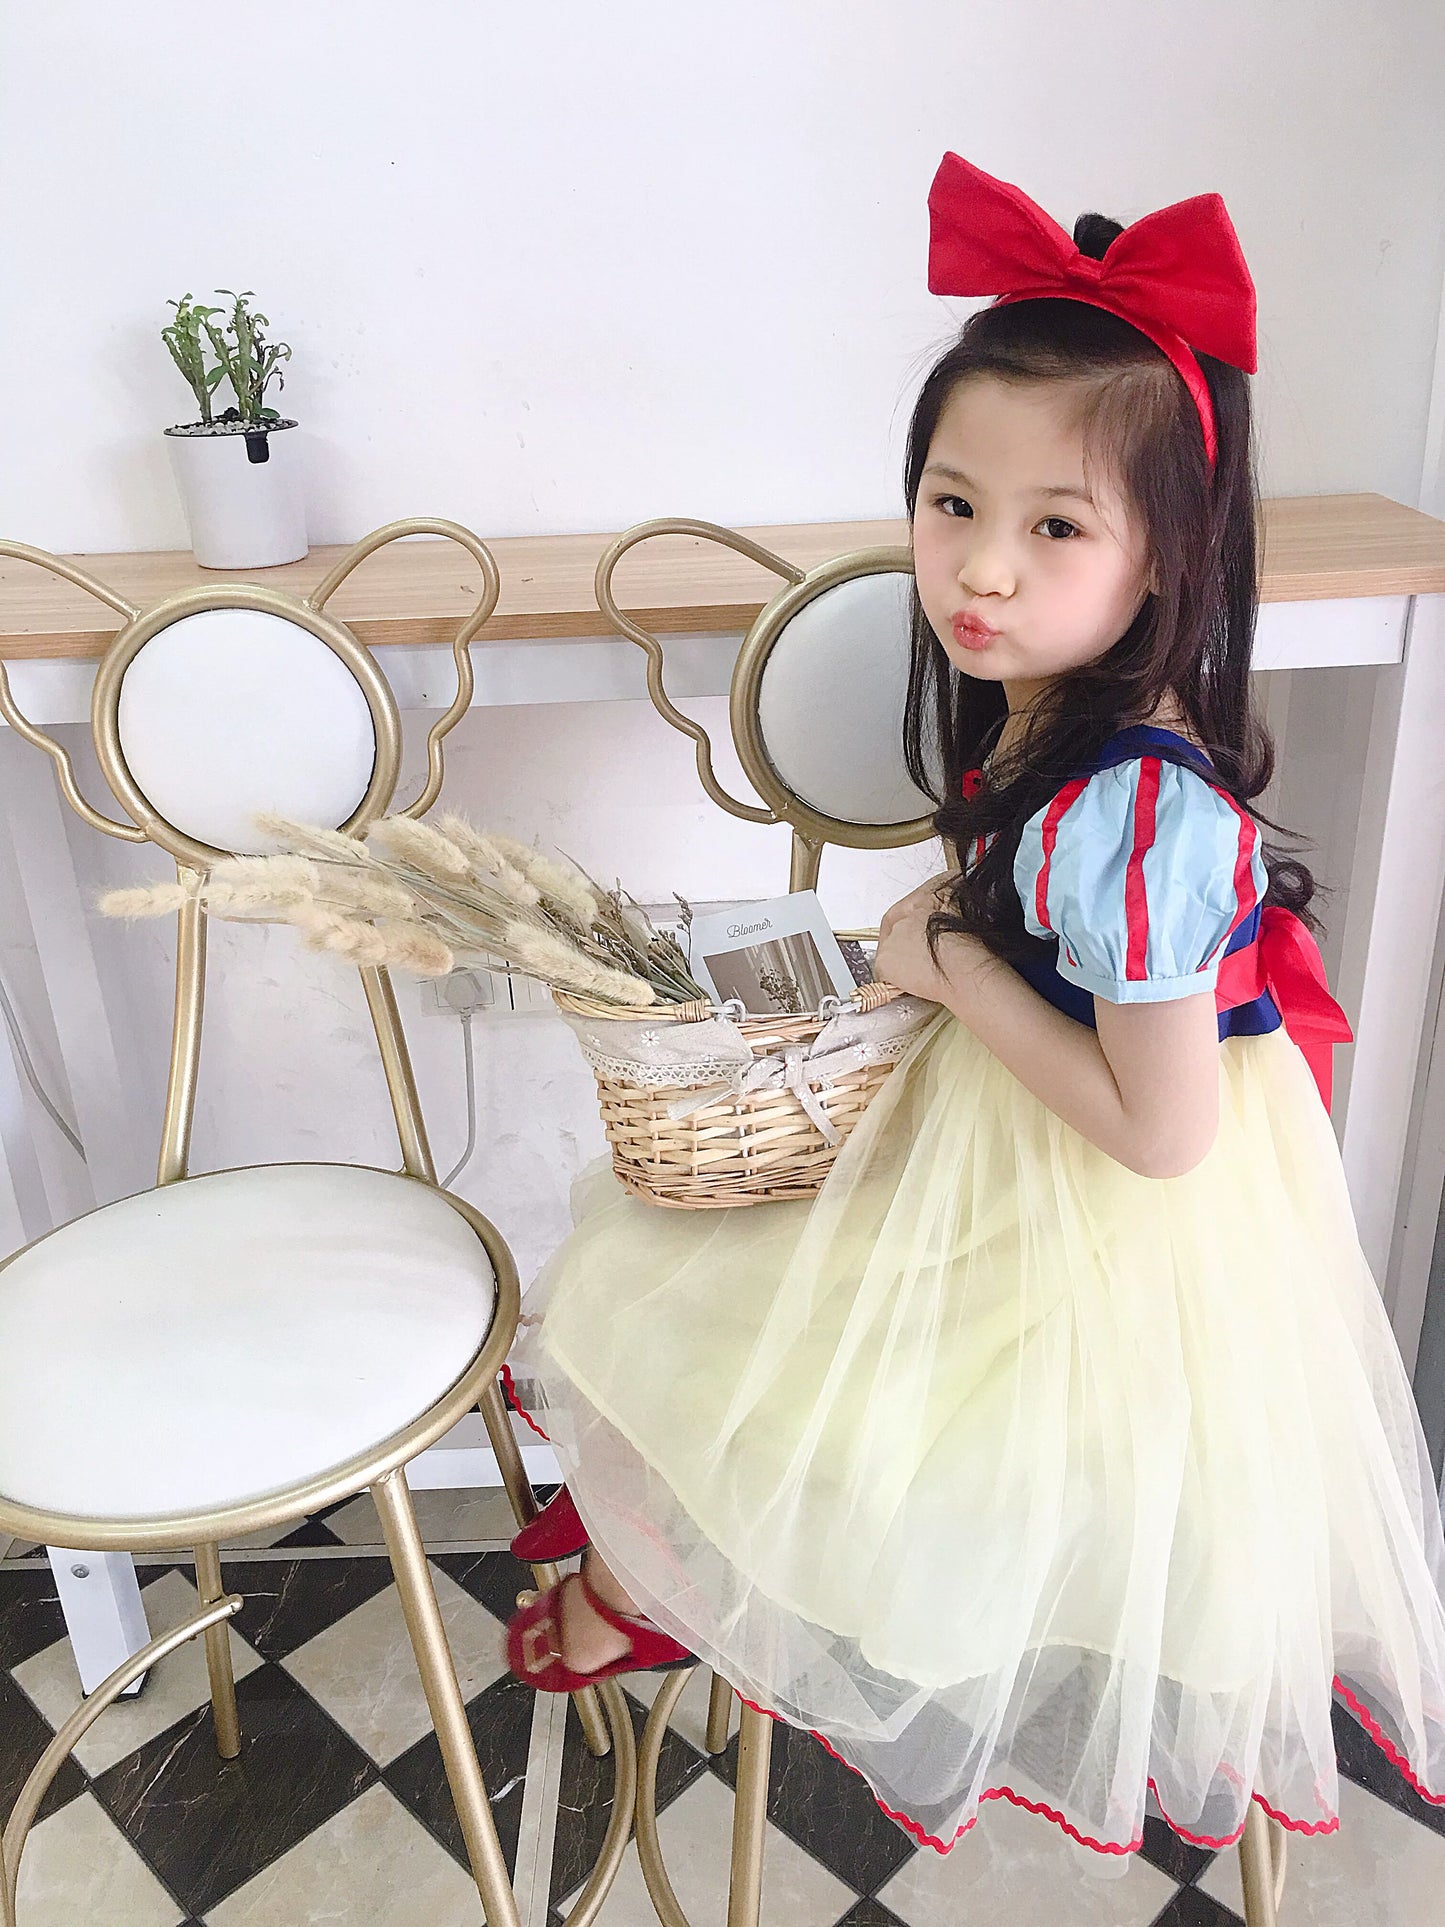 Girl Snow White Dress Summer Kids Short Sleeve Fashionable Princess Dress Girl Tulle Tutu Skirt Birthday Dress